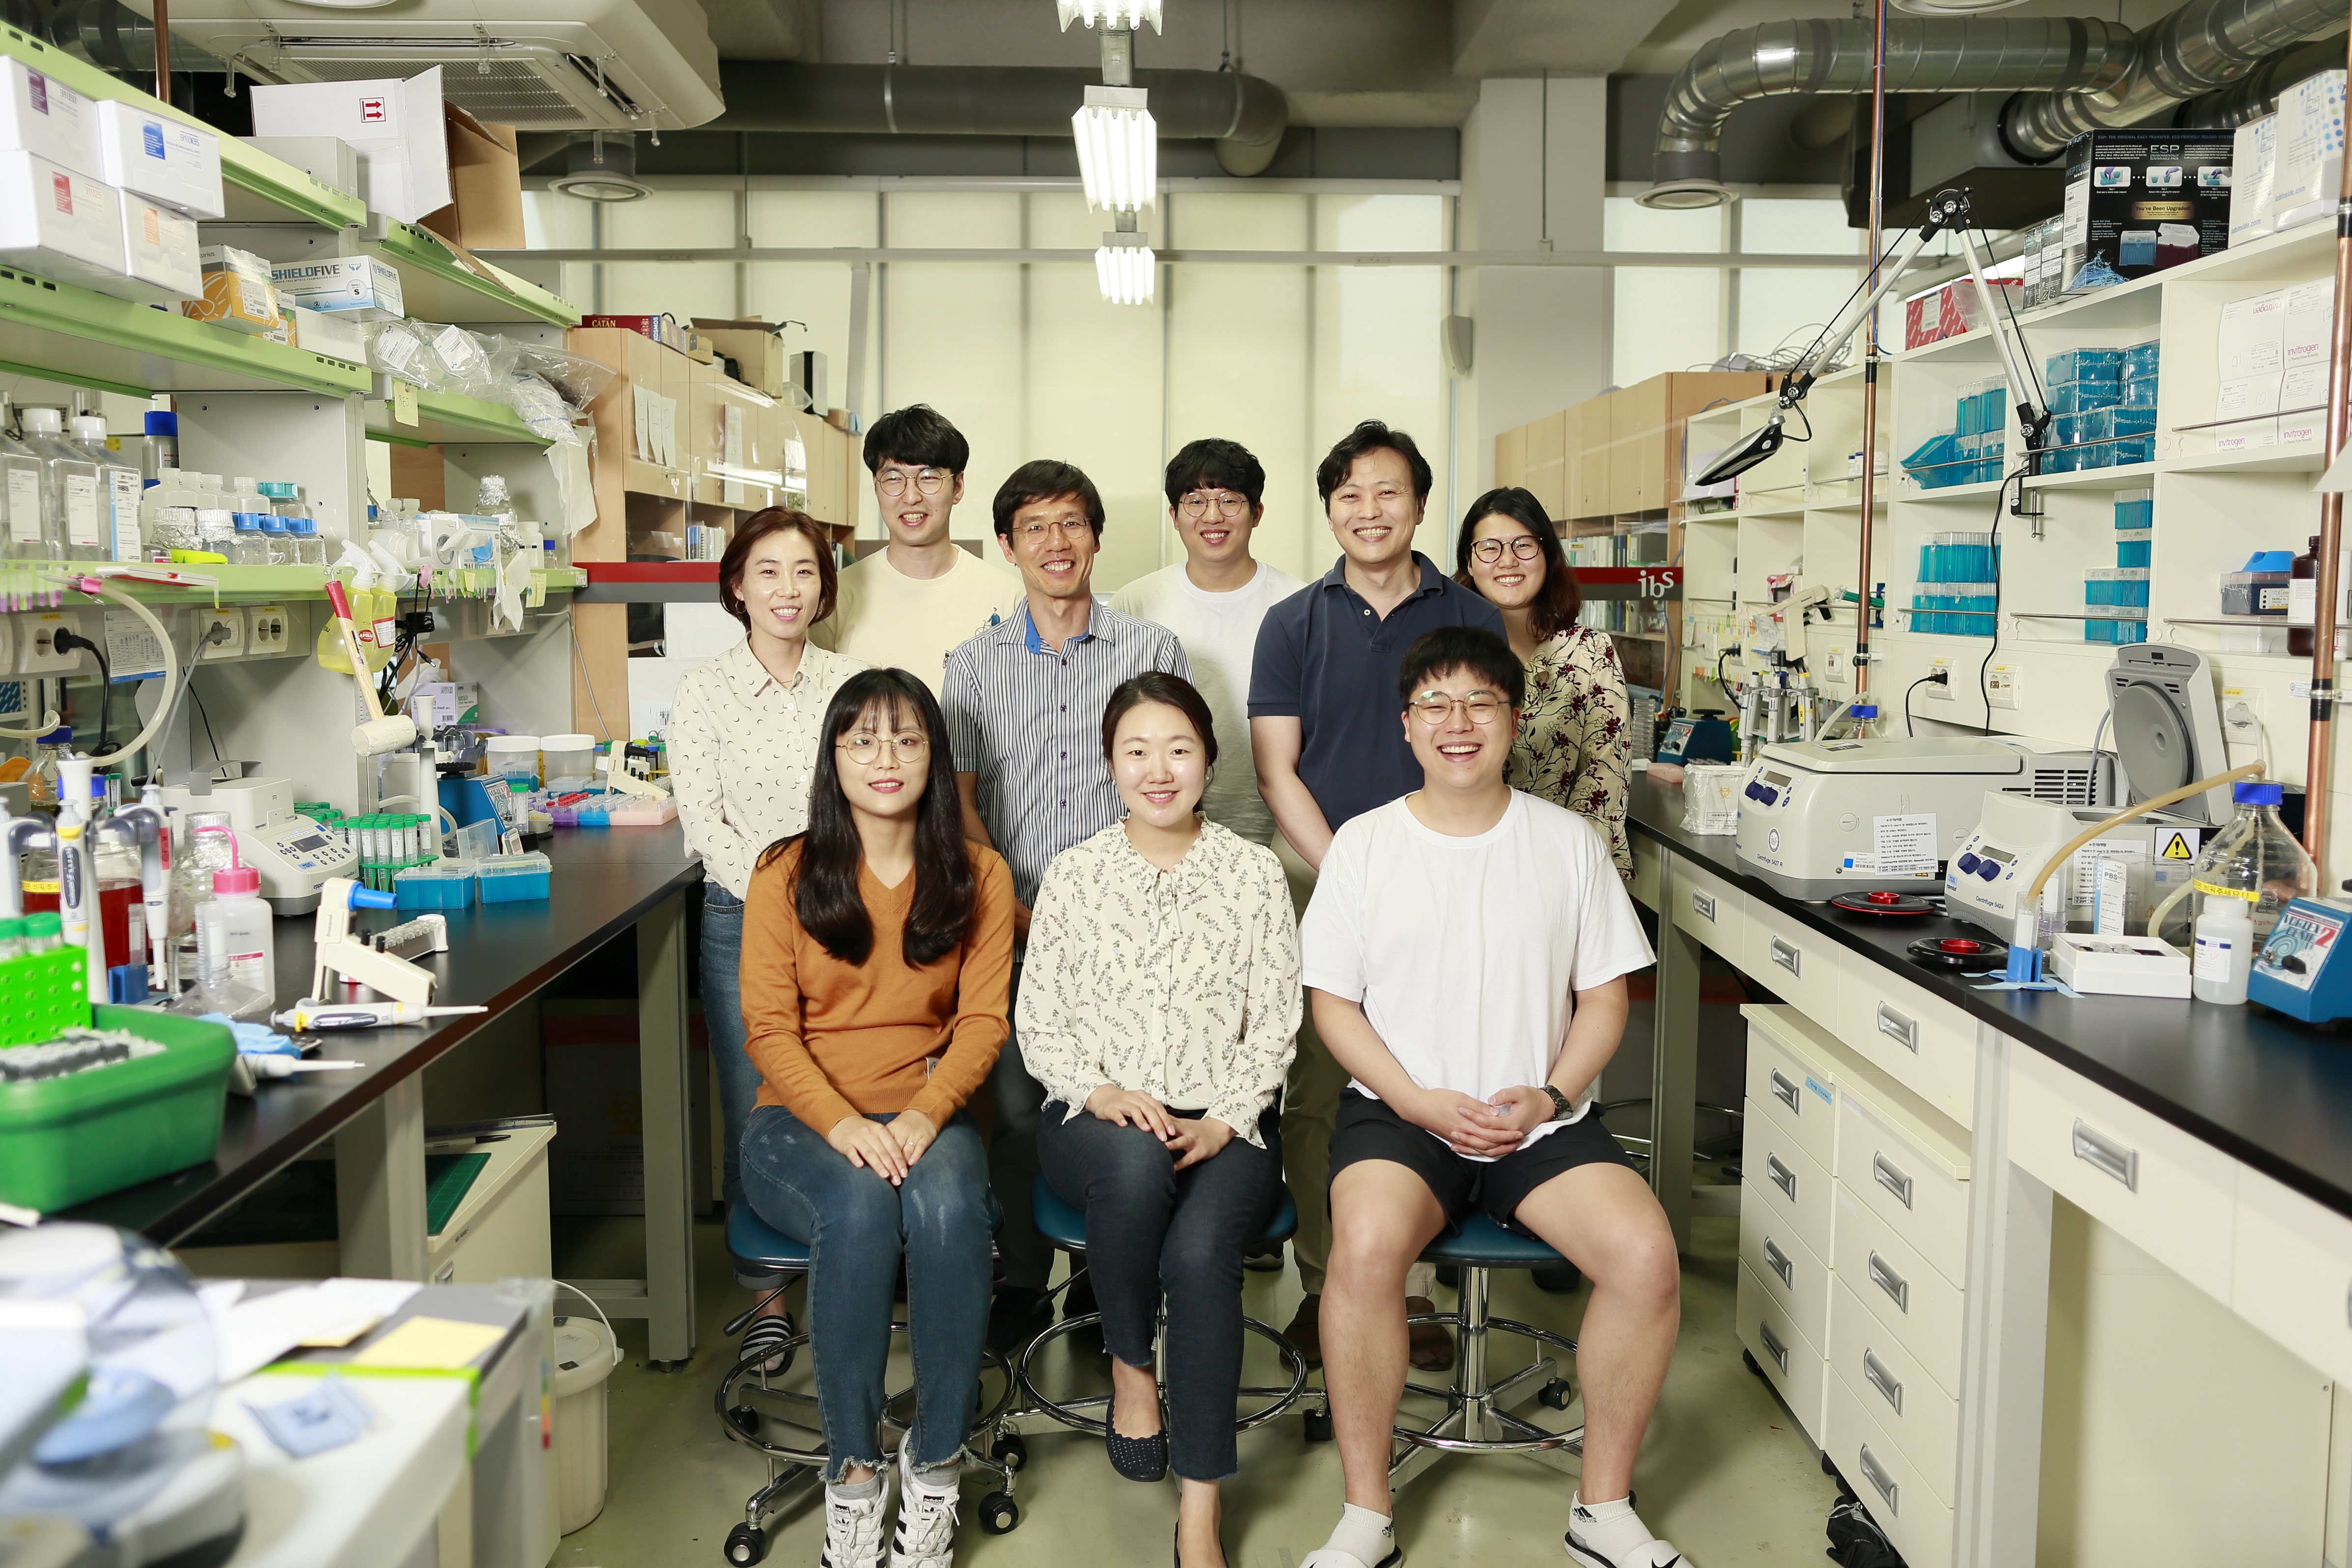 강석현 IBS 유전체 항상성 연구단 연구위원(윗줄 왼쪽 세 번째), 김하진 UNIST 생명과학과 교수(윗줄 오른쪽 두 번째)와 참여 연구진의 모습.  IBS 제공